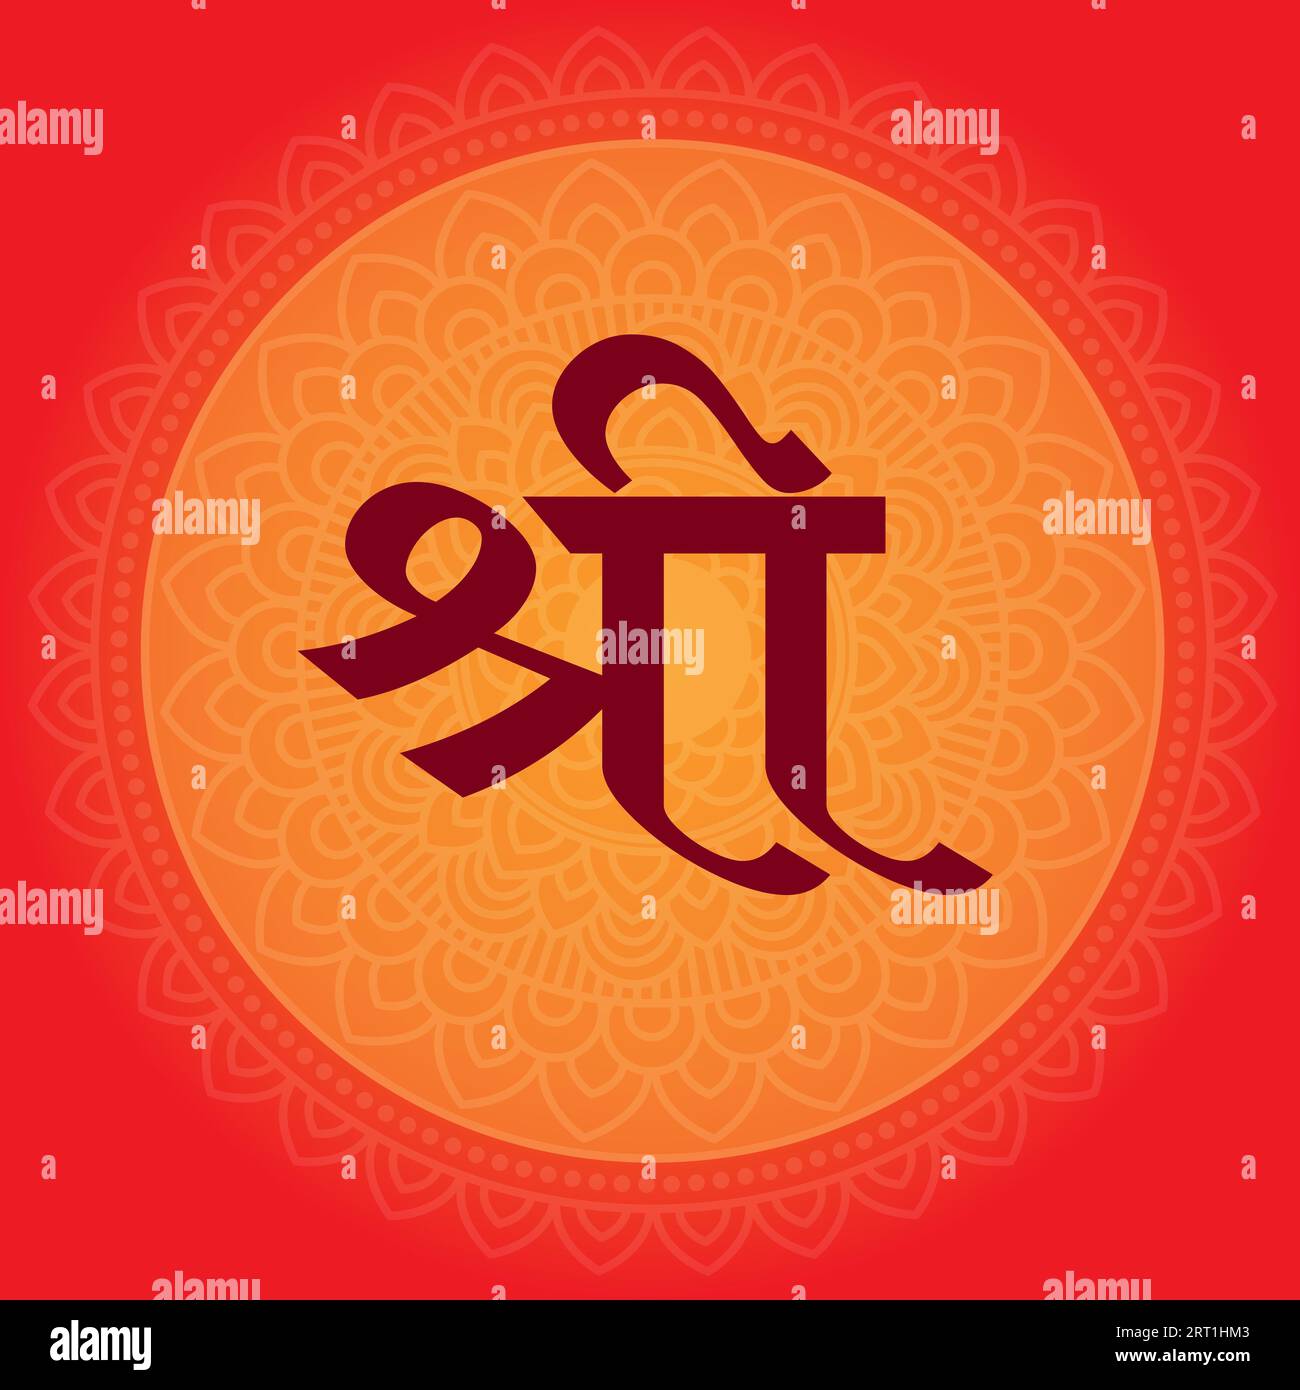 Shree auf dem Hintergrund von Orange Mandala: Ein leuchtendes Symbol der hinduistischen Spiritualität. Genießen Sie das lebendige Wesen der alten Weisheit und göttlichen Energie. Stockfoto